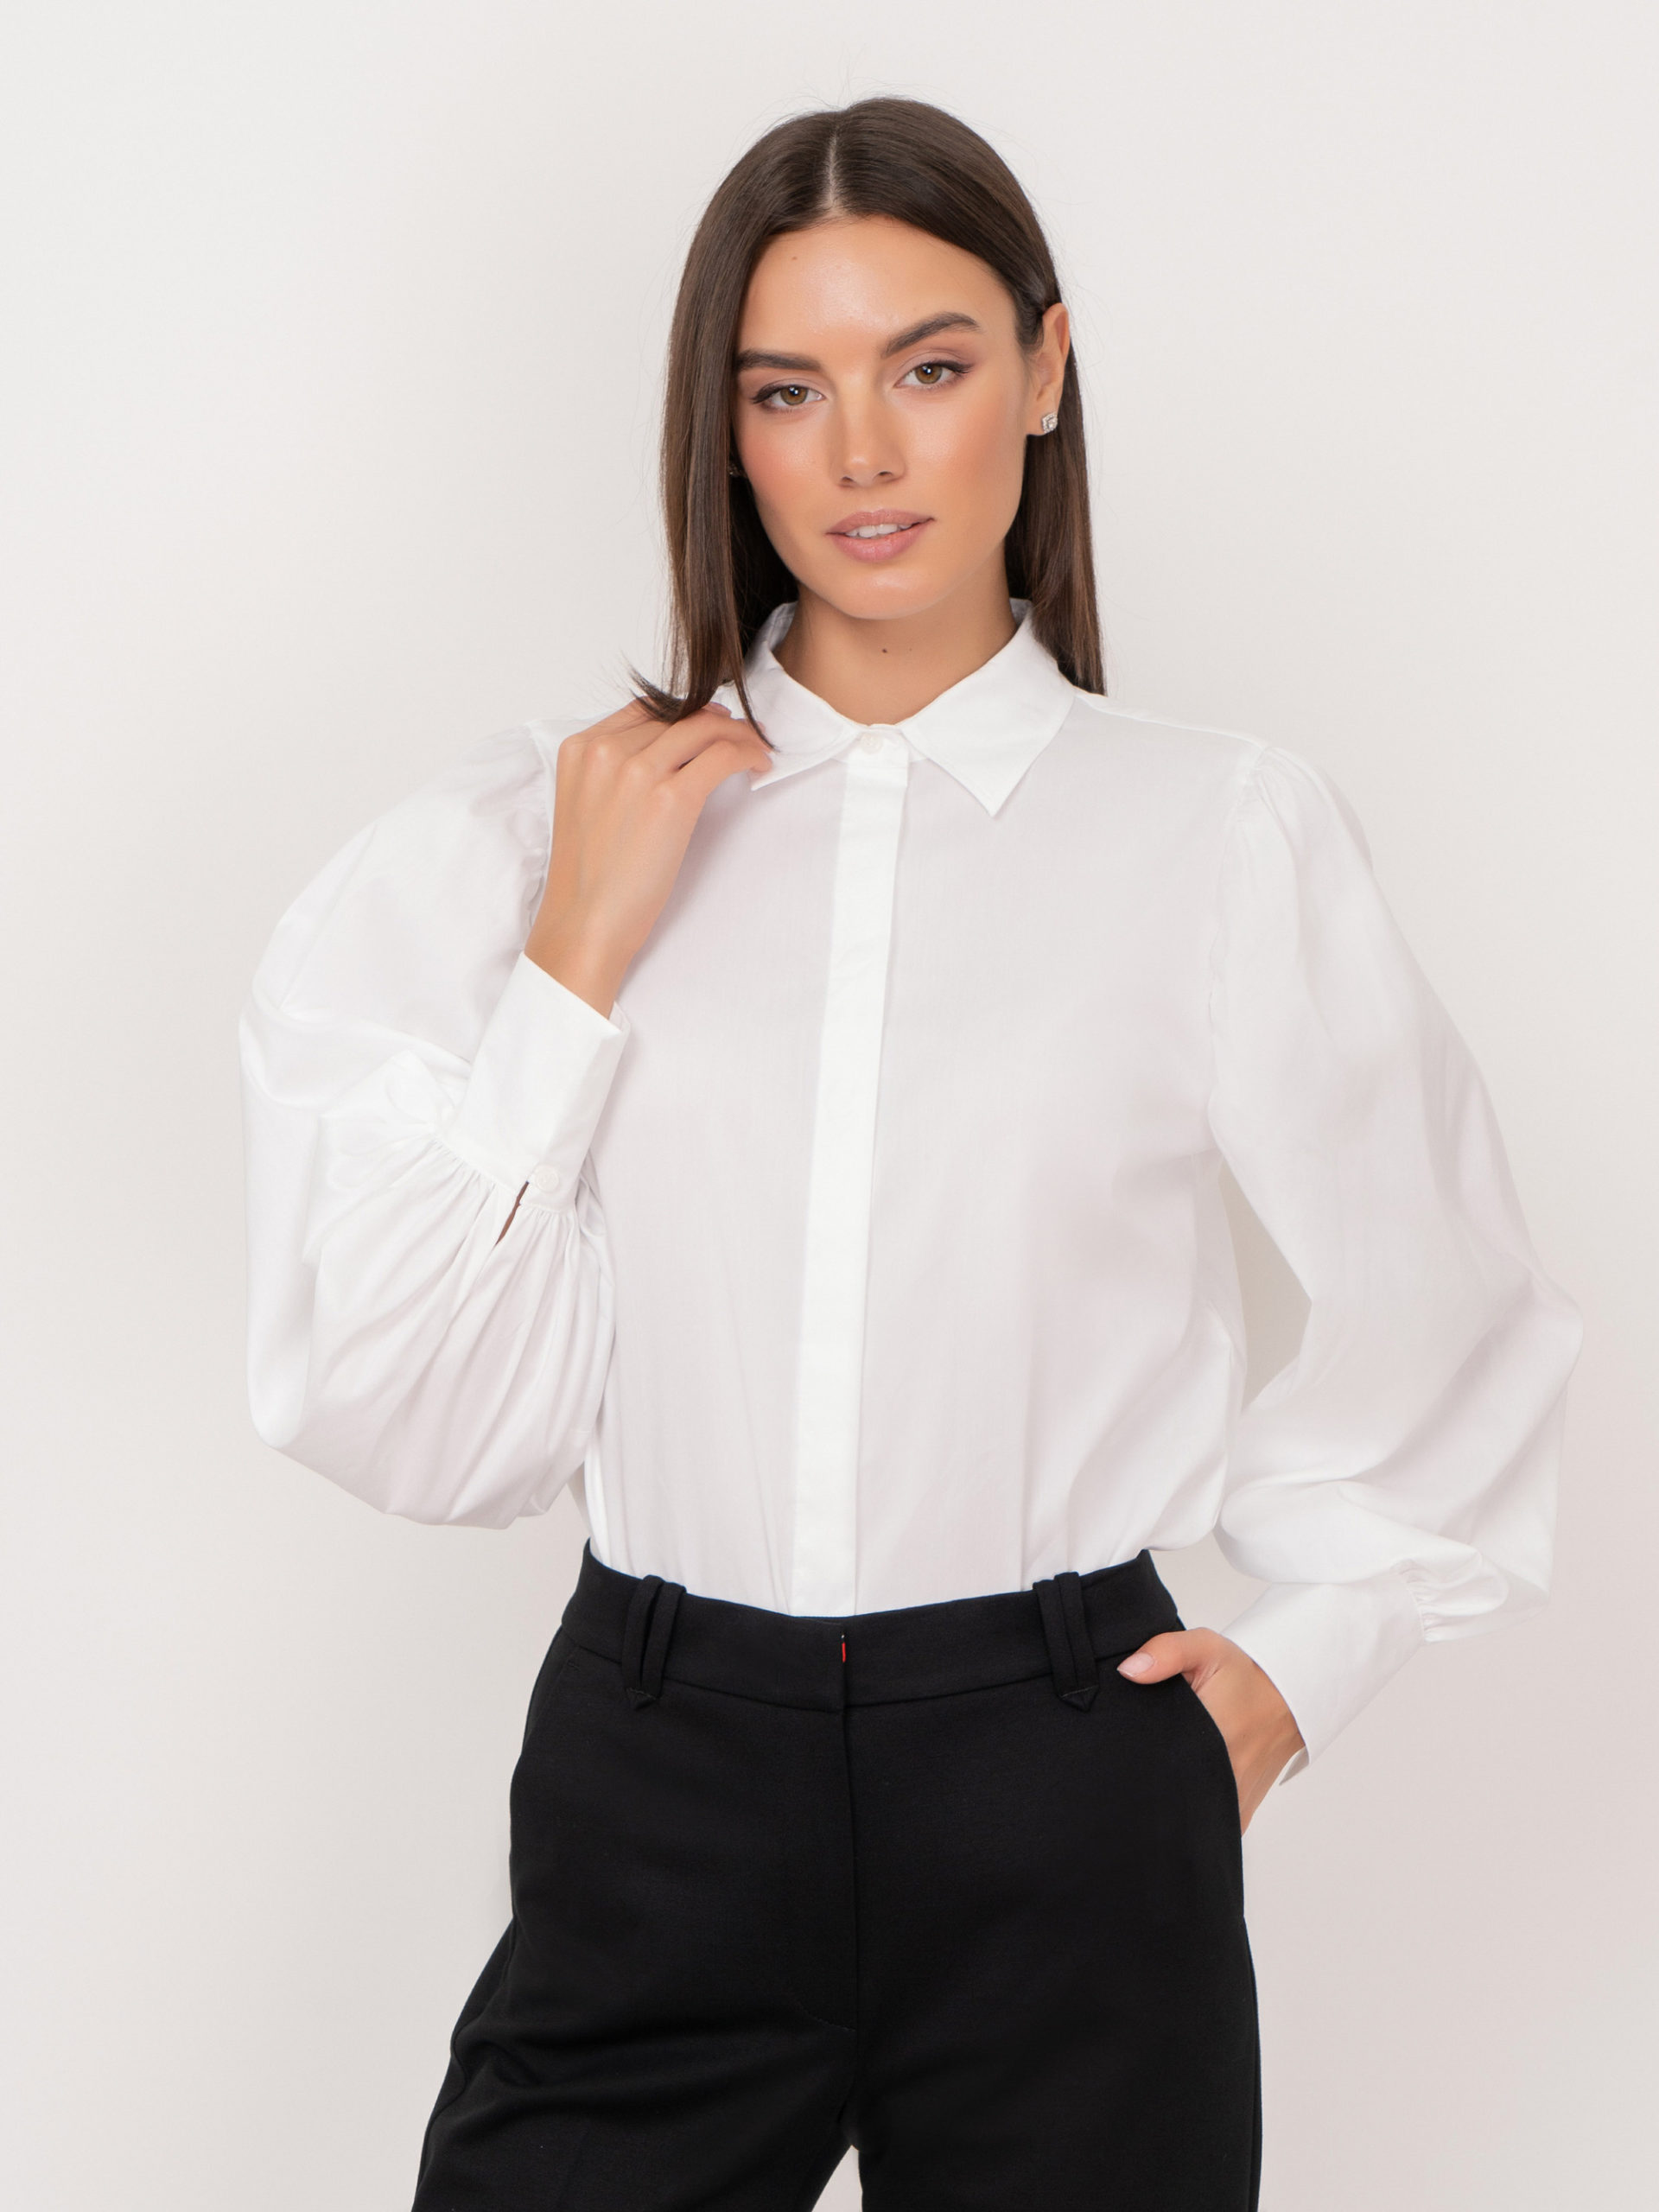 Элегантные женские блузки для работы - какой крой выбрать, с чем сочетать?